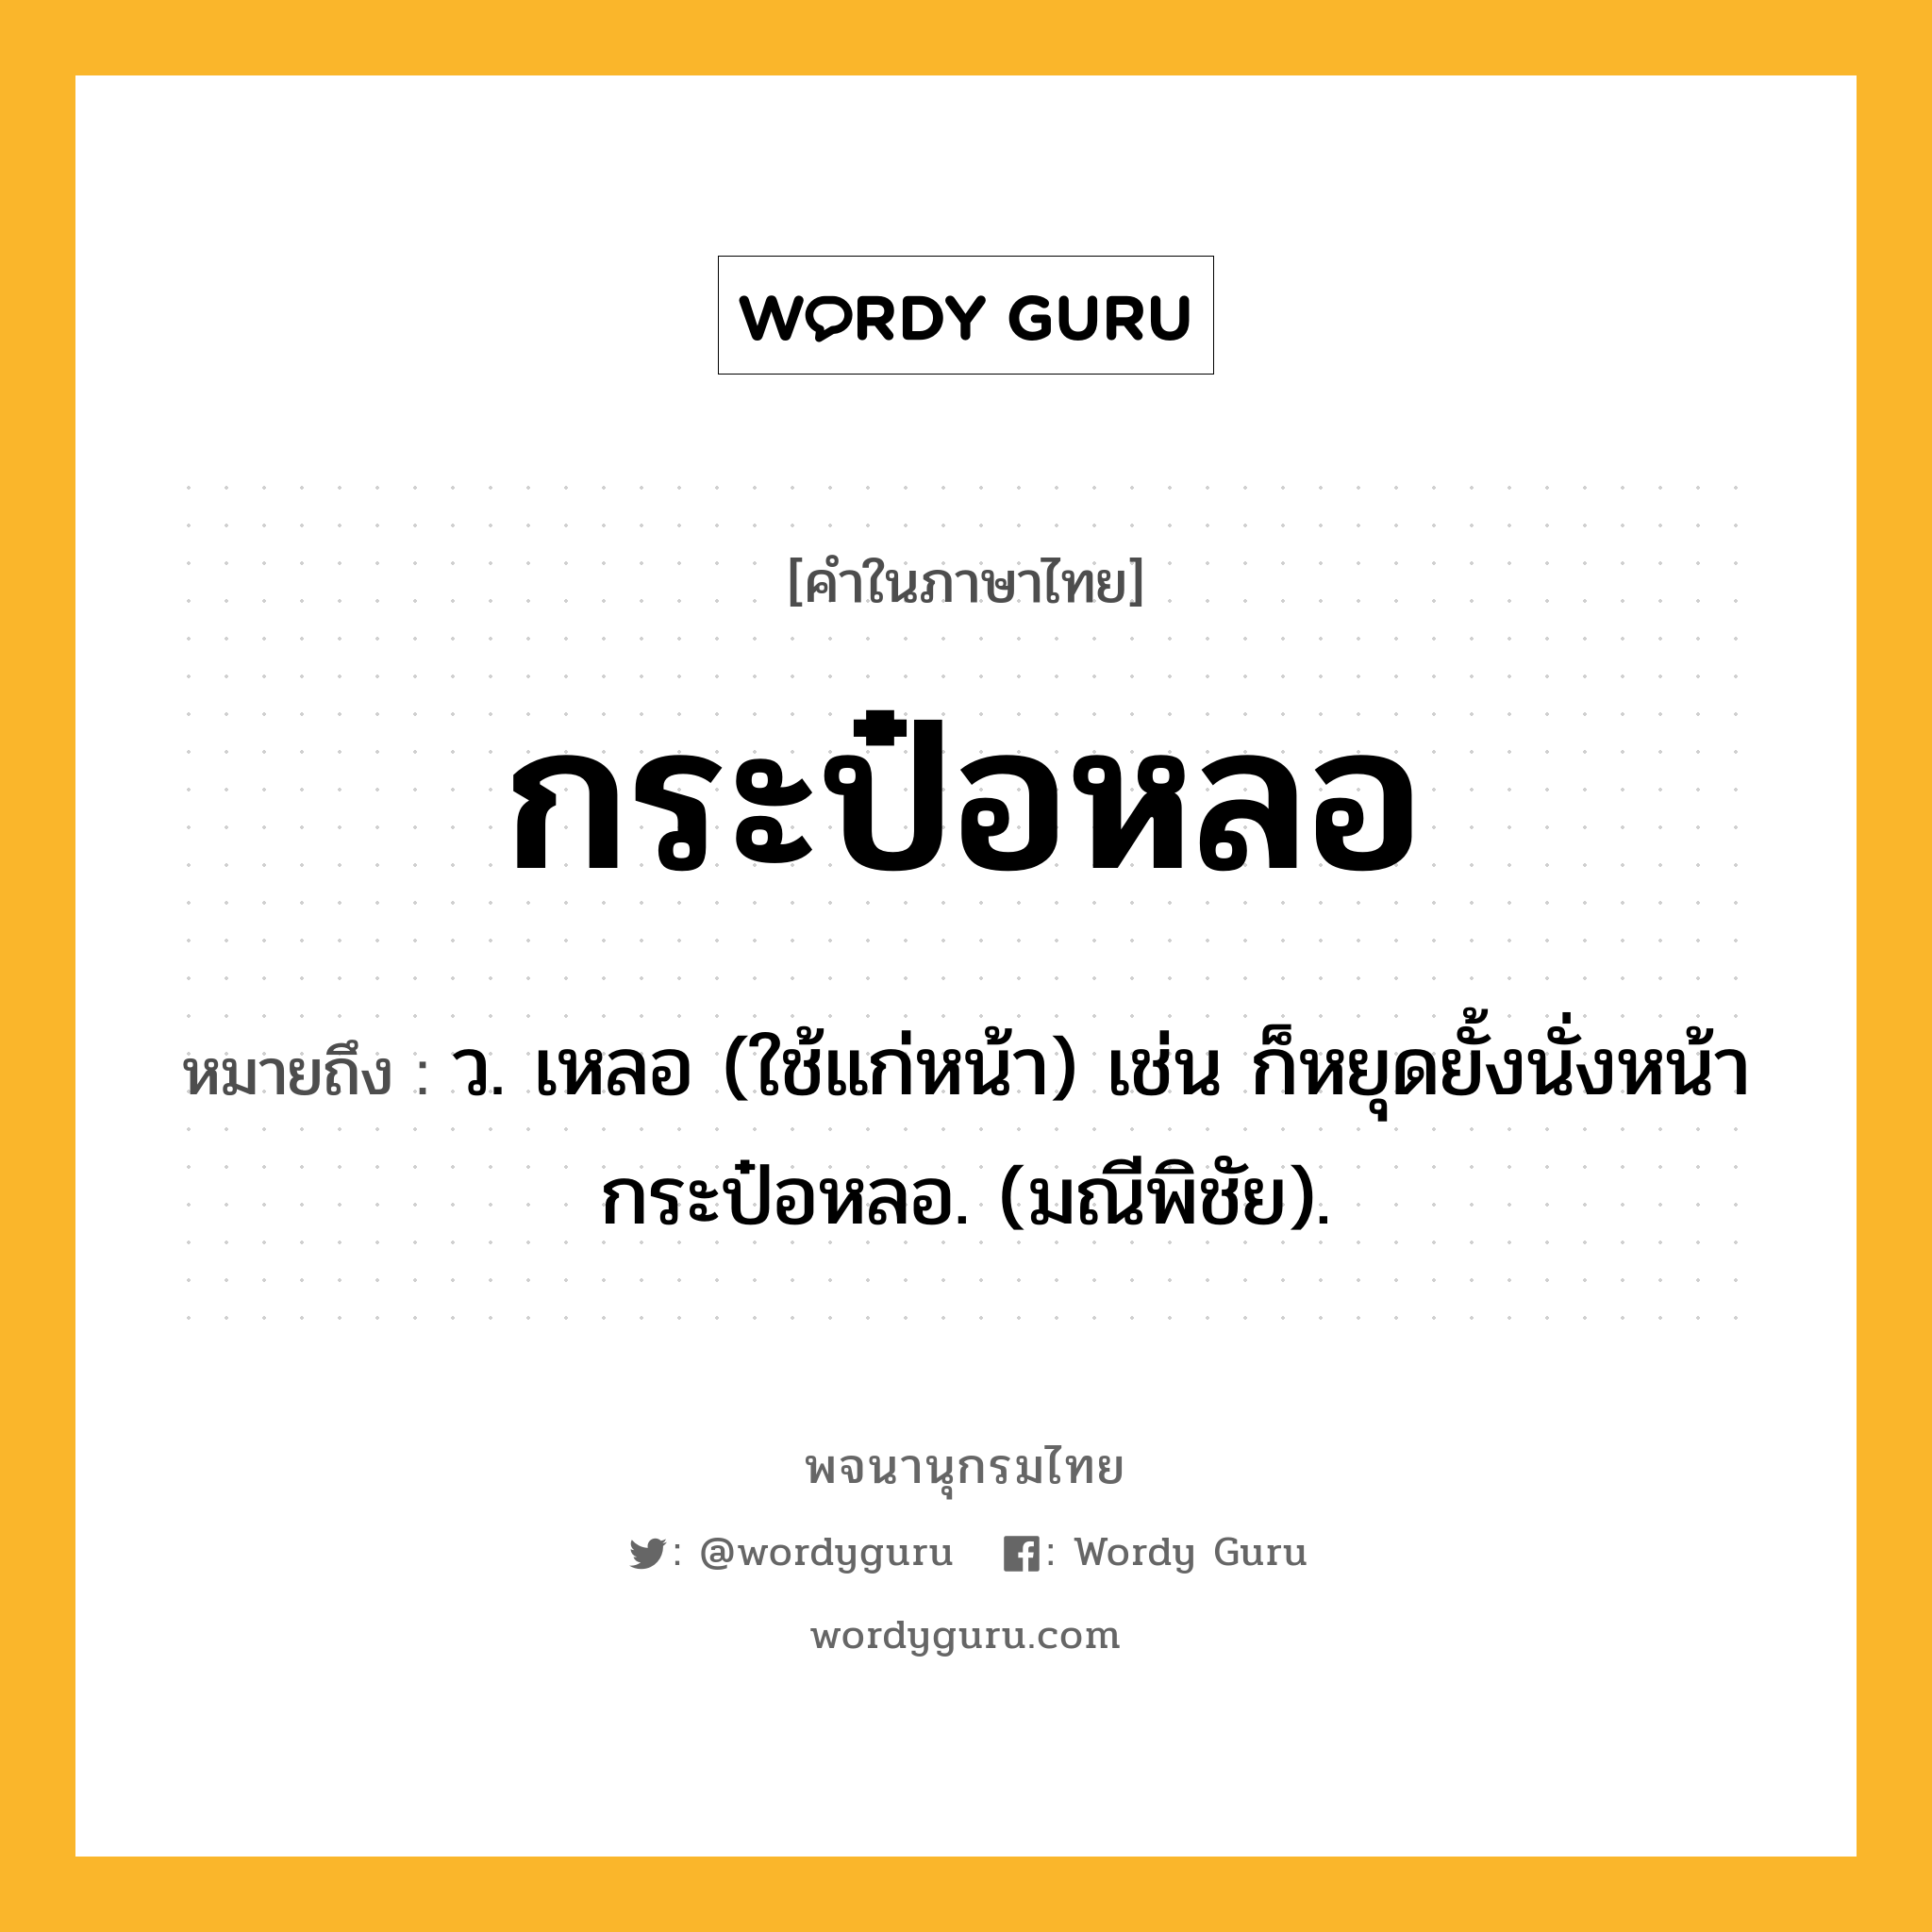 กระป๋อหลอ หมายถึงอะไร?, คำในภาษาไทย กระป๋อหลอ หมายถึง ว. เหลอ (ใช้แก่หน้า) เช่น ก็หยุดยั้งนั่งหน้ากระป๋อหลอ. (มณีพิชัย).